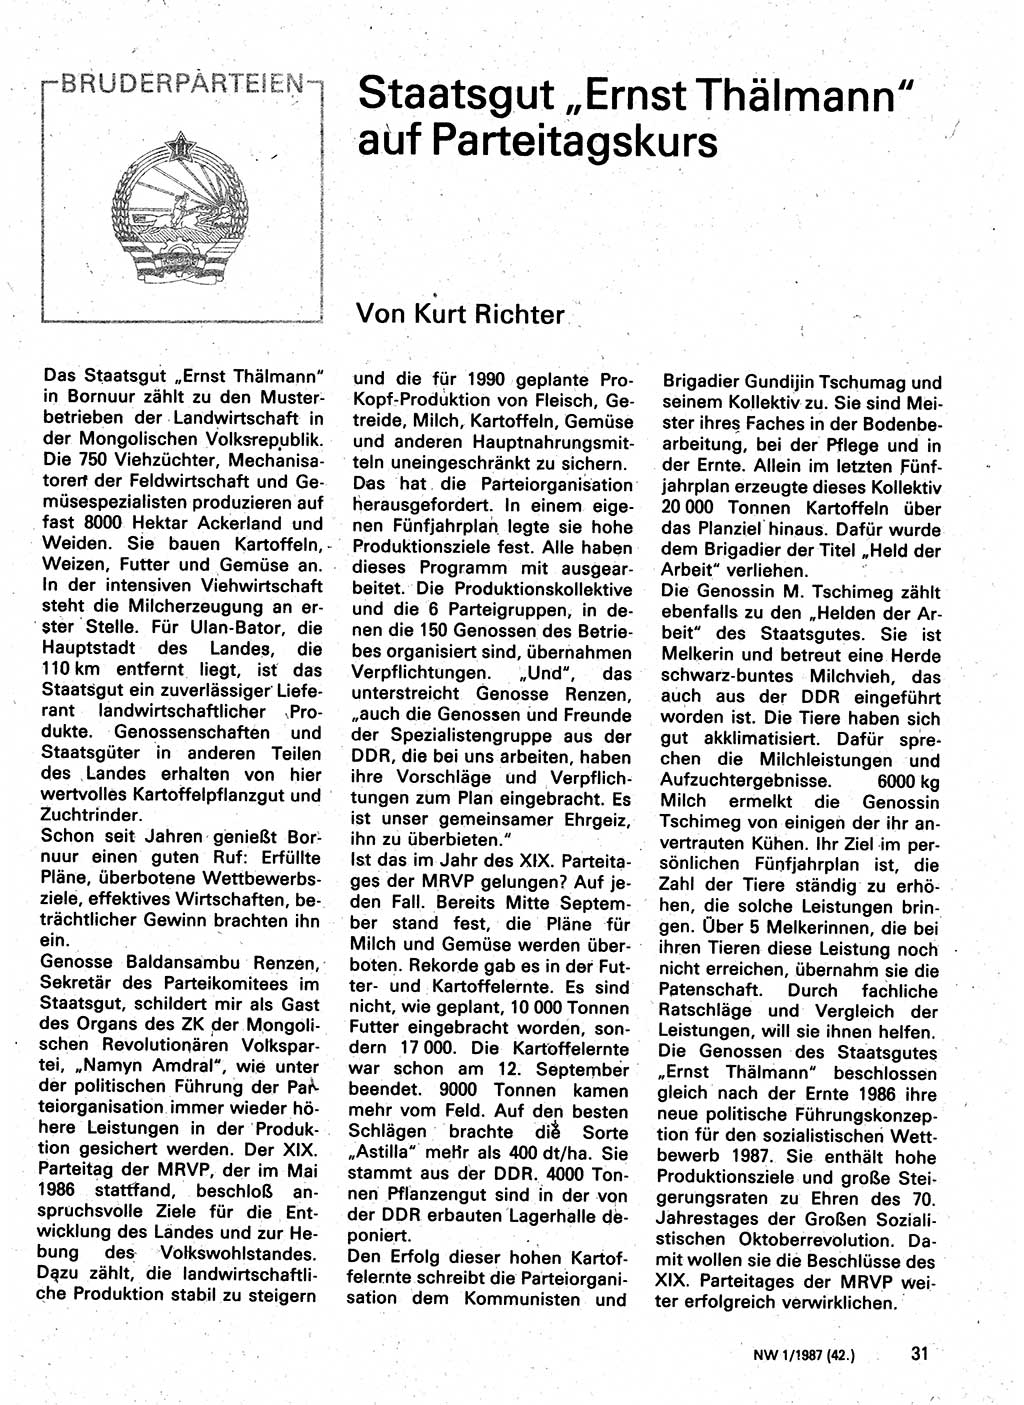 Neuer Weg (NW), Organ des Zentralkomitees (ZK) der SED (Sozialistische Einheitspartei Deutschlands) für Fragen des Parteilebens, 42. Jahrgang [Deutsche Demokratische Republik (DDR)] 1987, Seite 31 (NW ZK SED DDR 1987, S. 31)